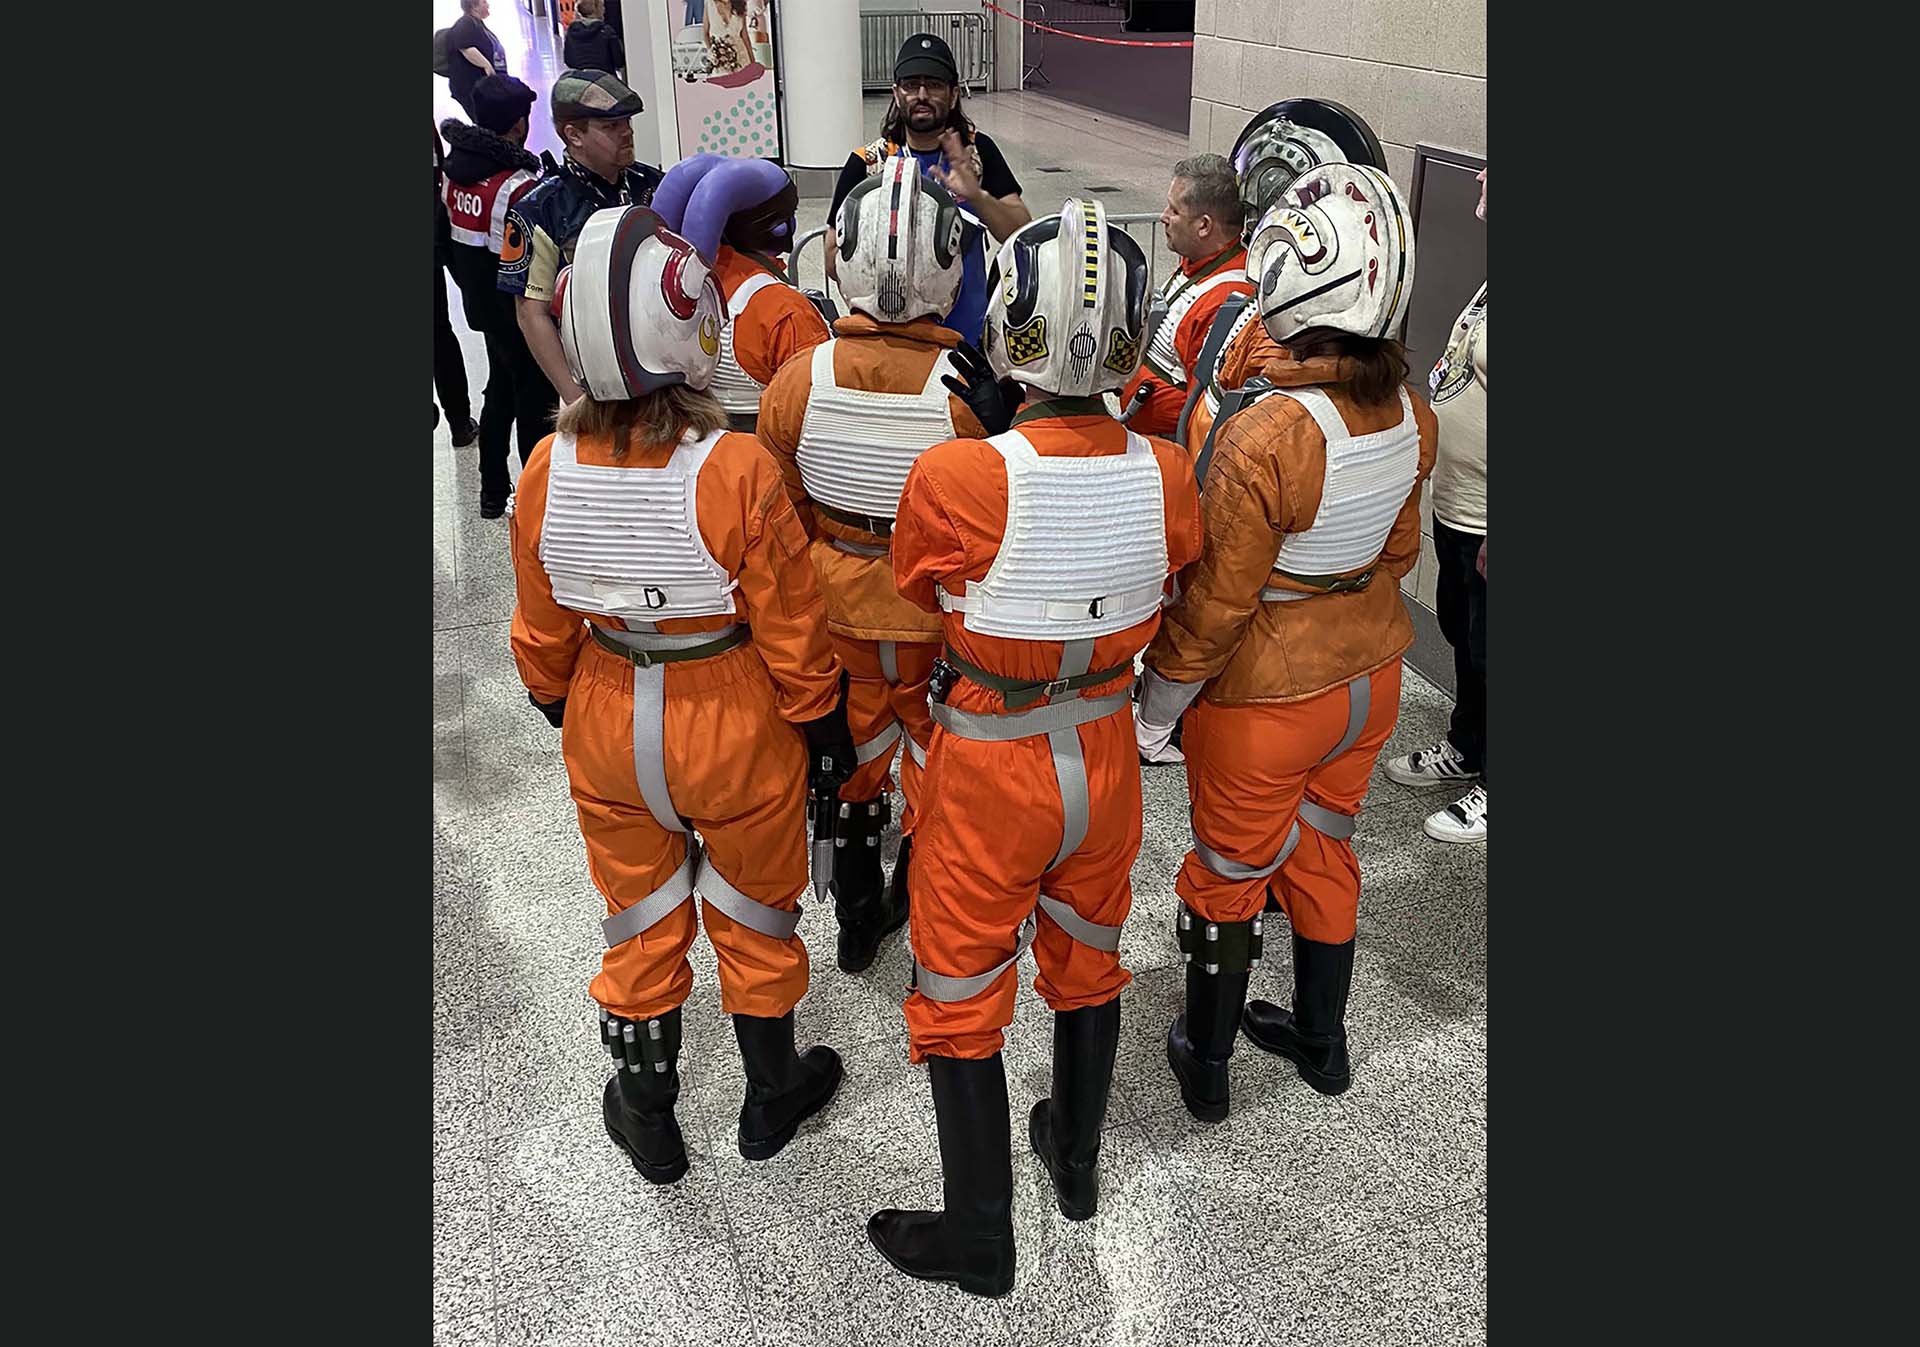 Vargas briefs members of the Rebel Legion in X-wing flight suits